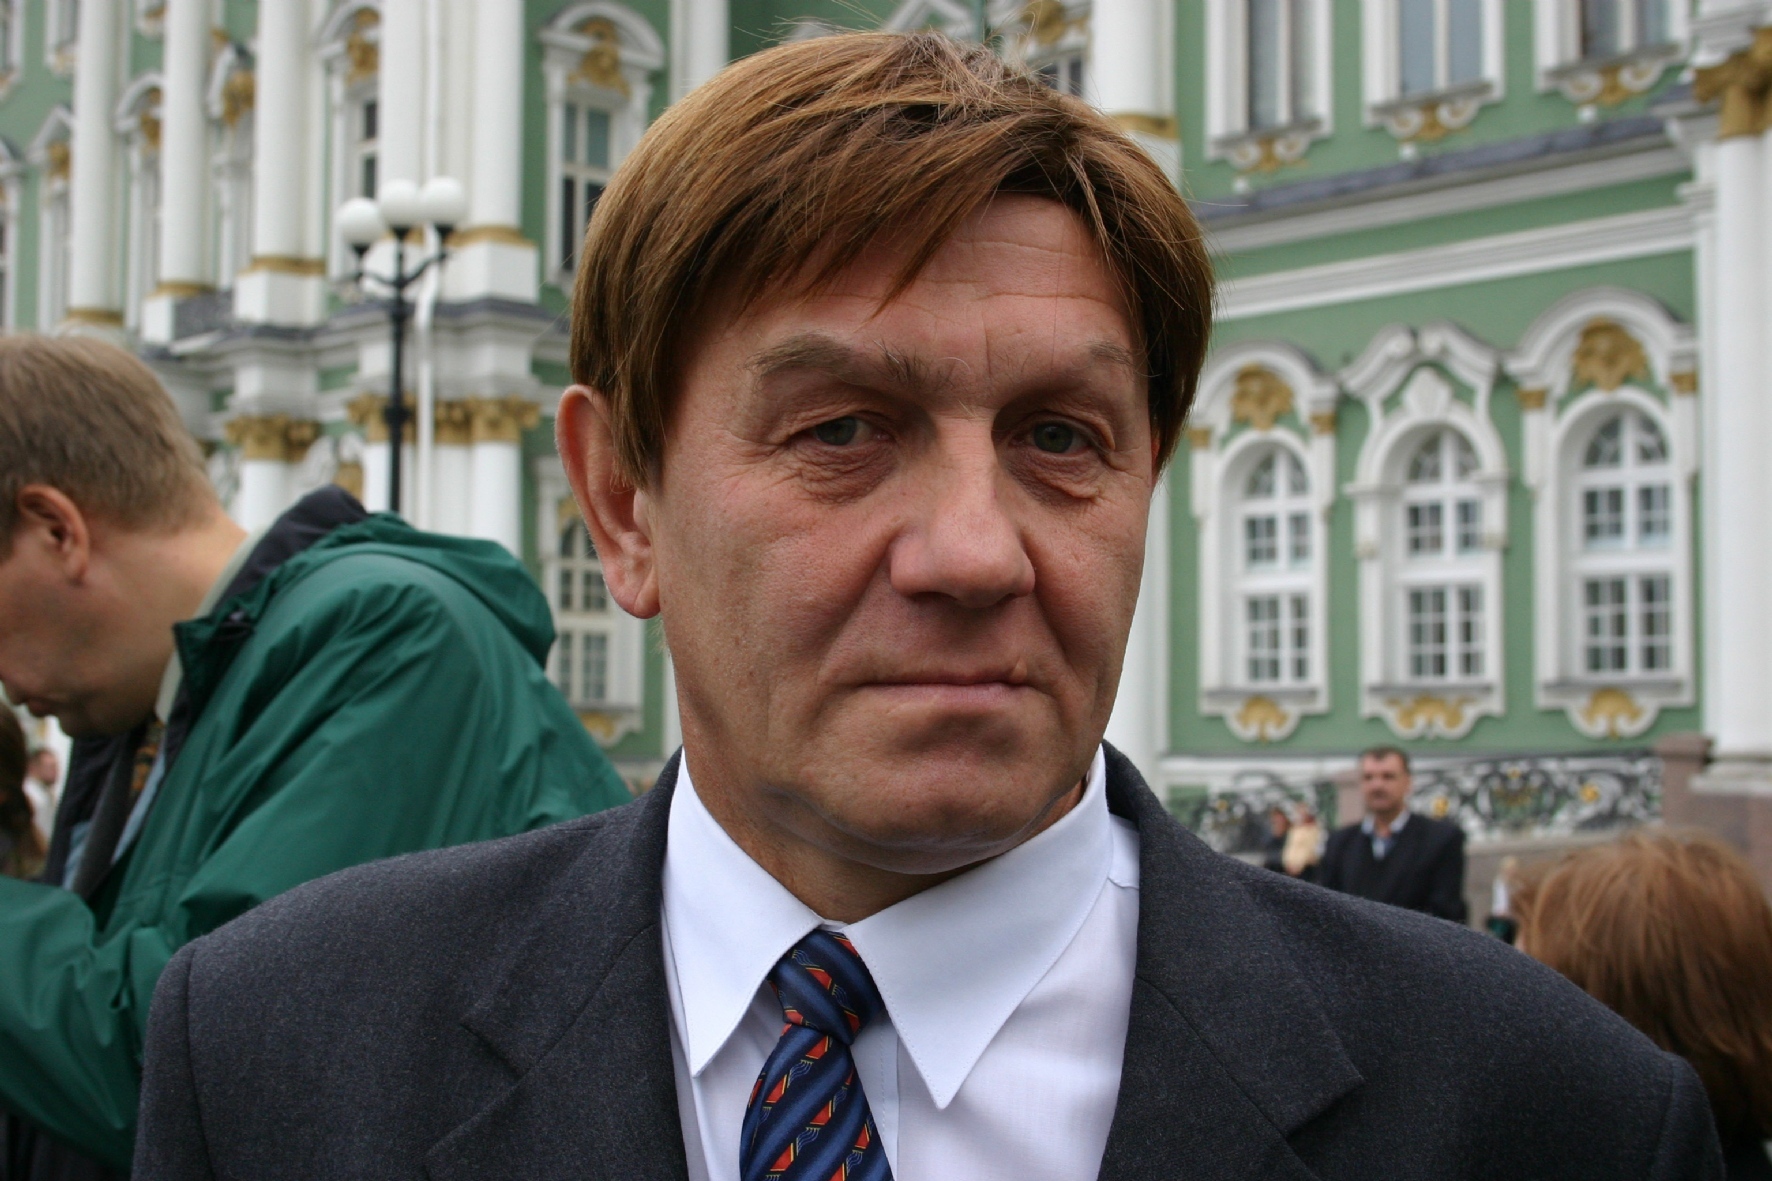 Бывший ректор Санкт-Петербургского Государственного университета сервиса и экономики Александр Викторов (убит в 2012 году).&nbsp;

&nbsp;